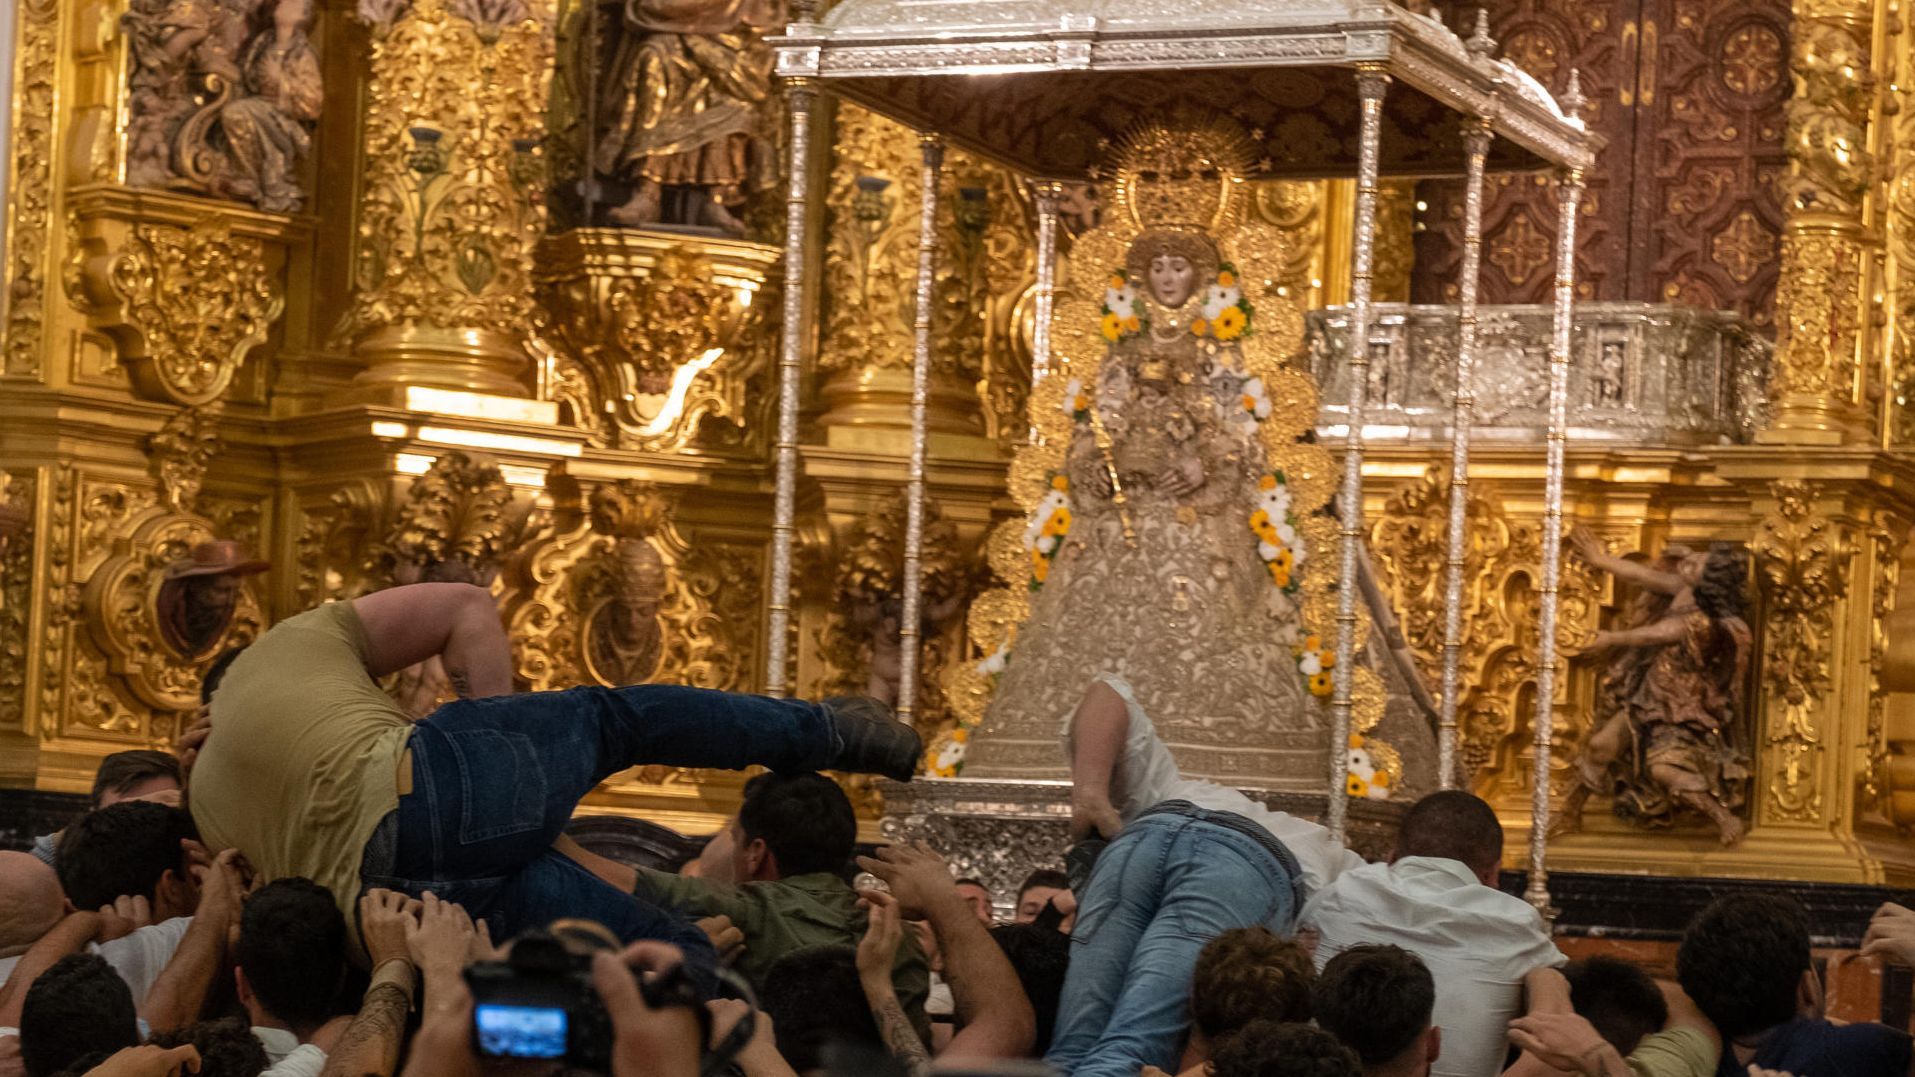 Los almonteños saltan la reja a las 2:55 horas, comenzando la procesión de la Virgen del Rocío